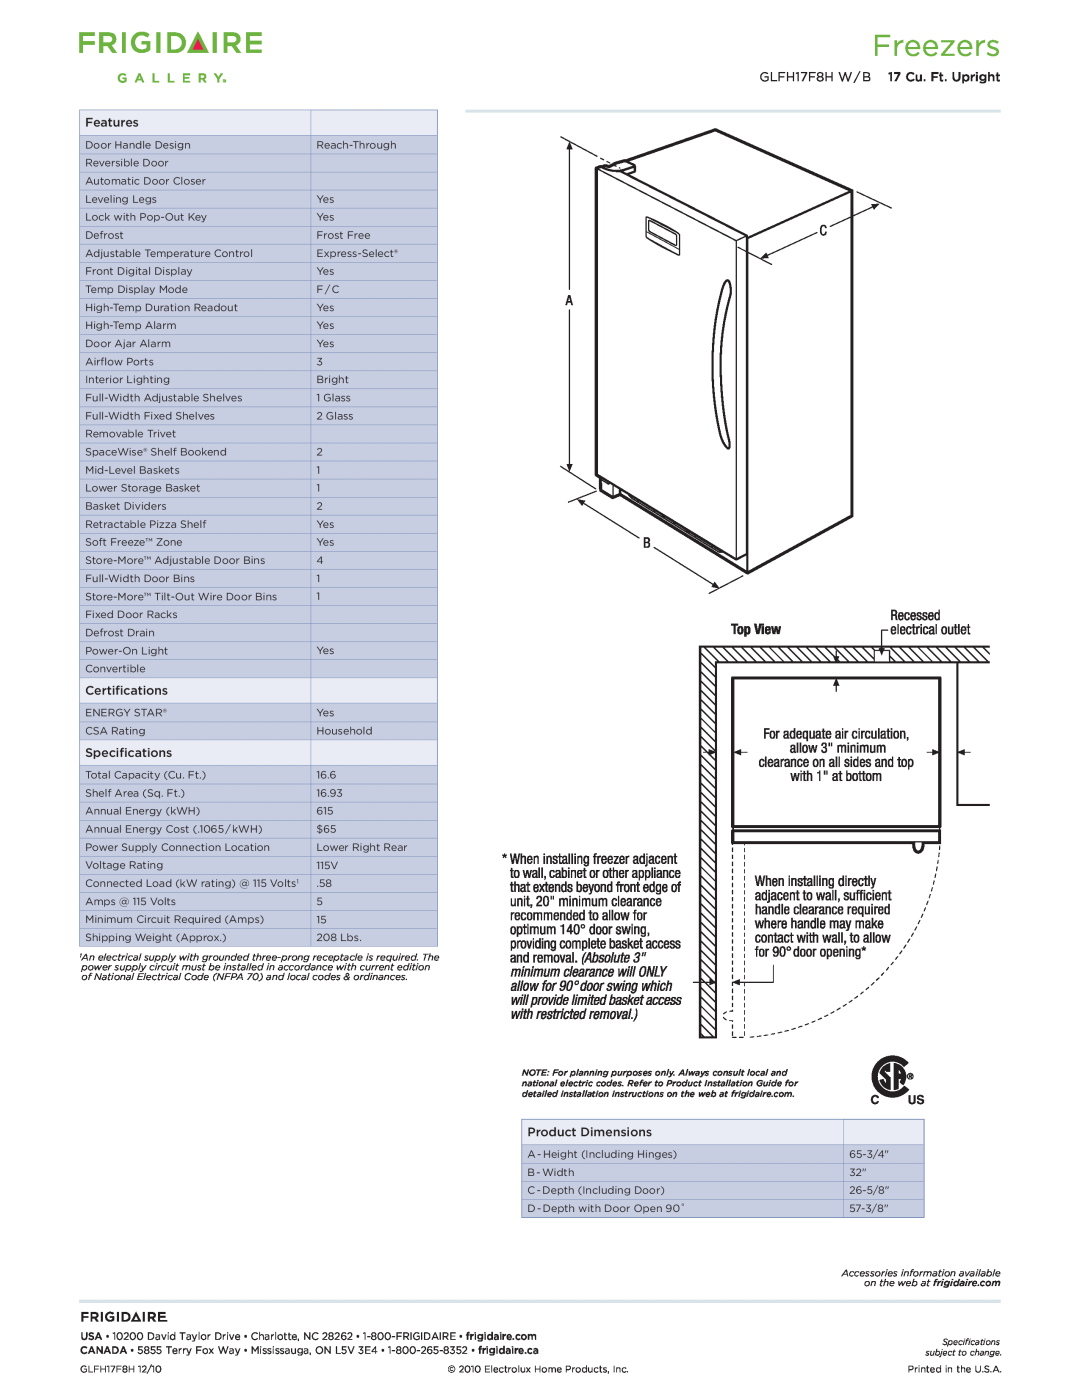 Frigidaire dimensions Freezers, GLFH17F8H W / B 17 Cu. Ft. Upright 